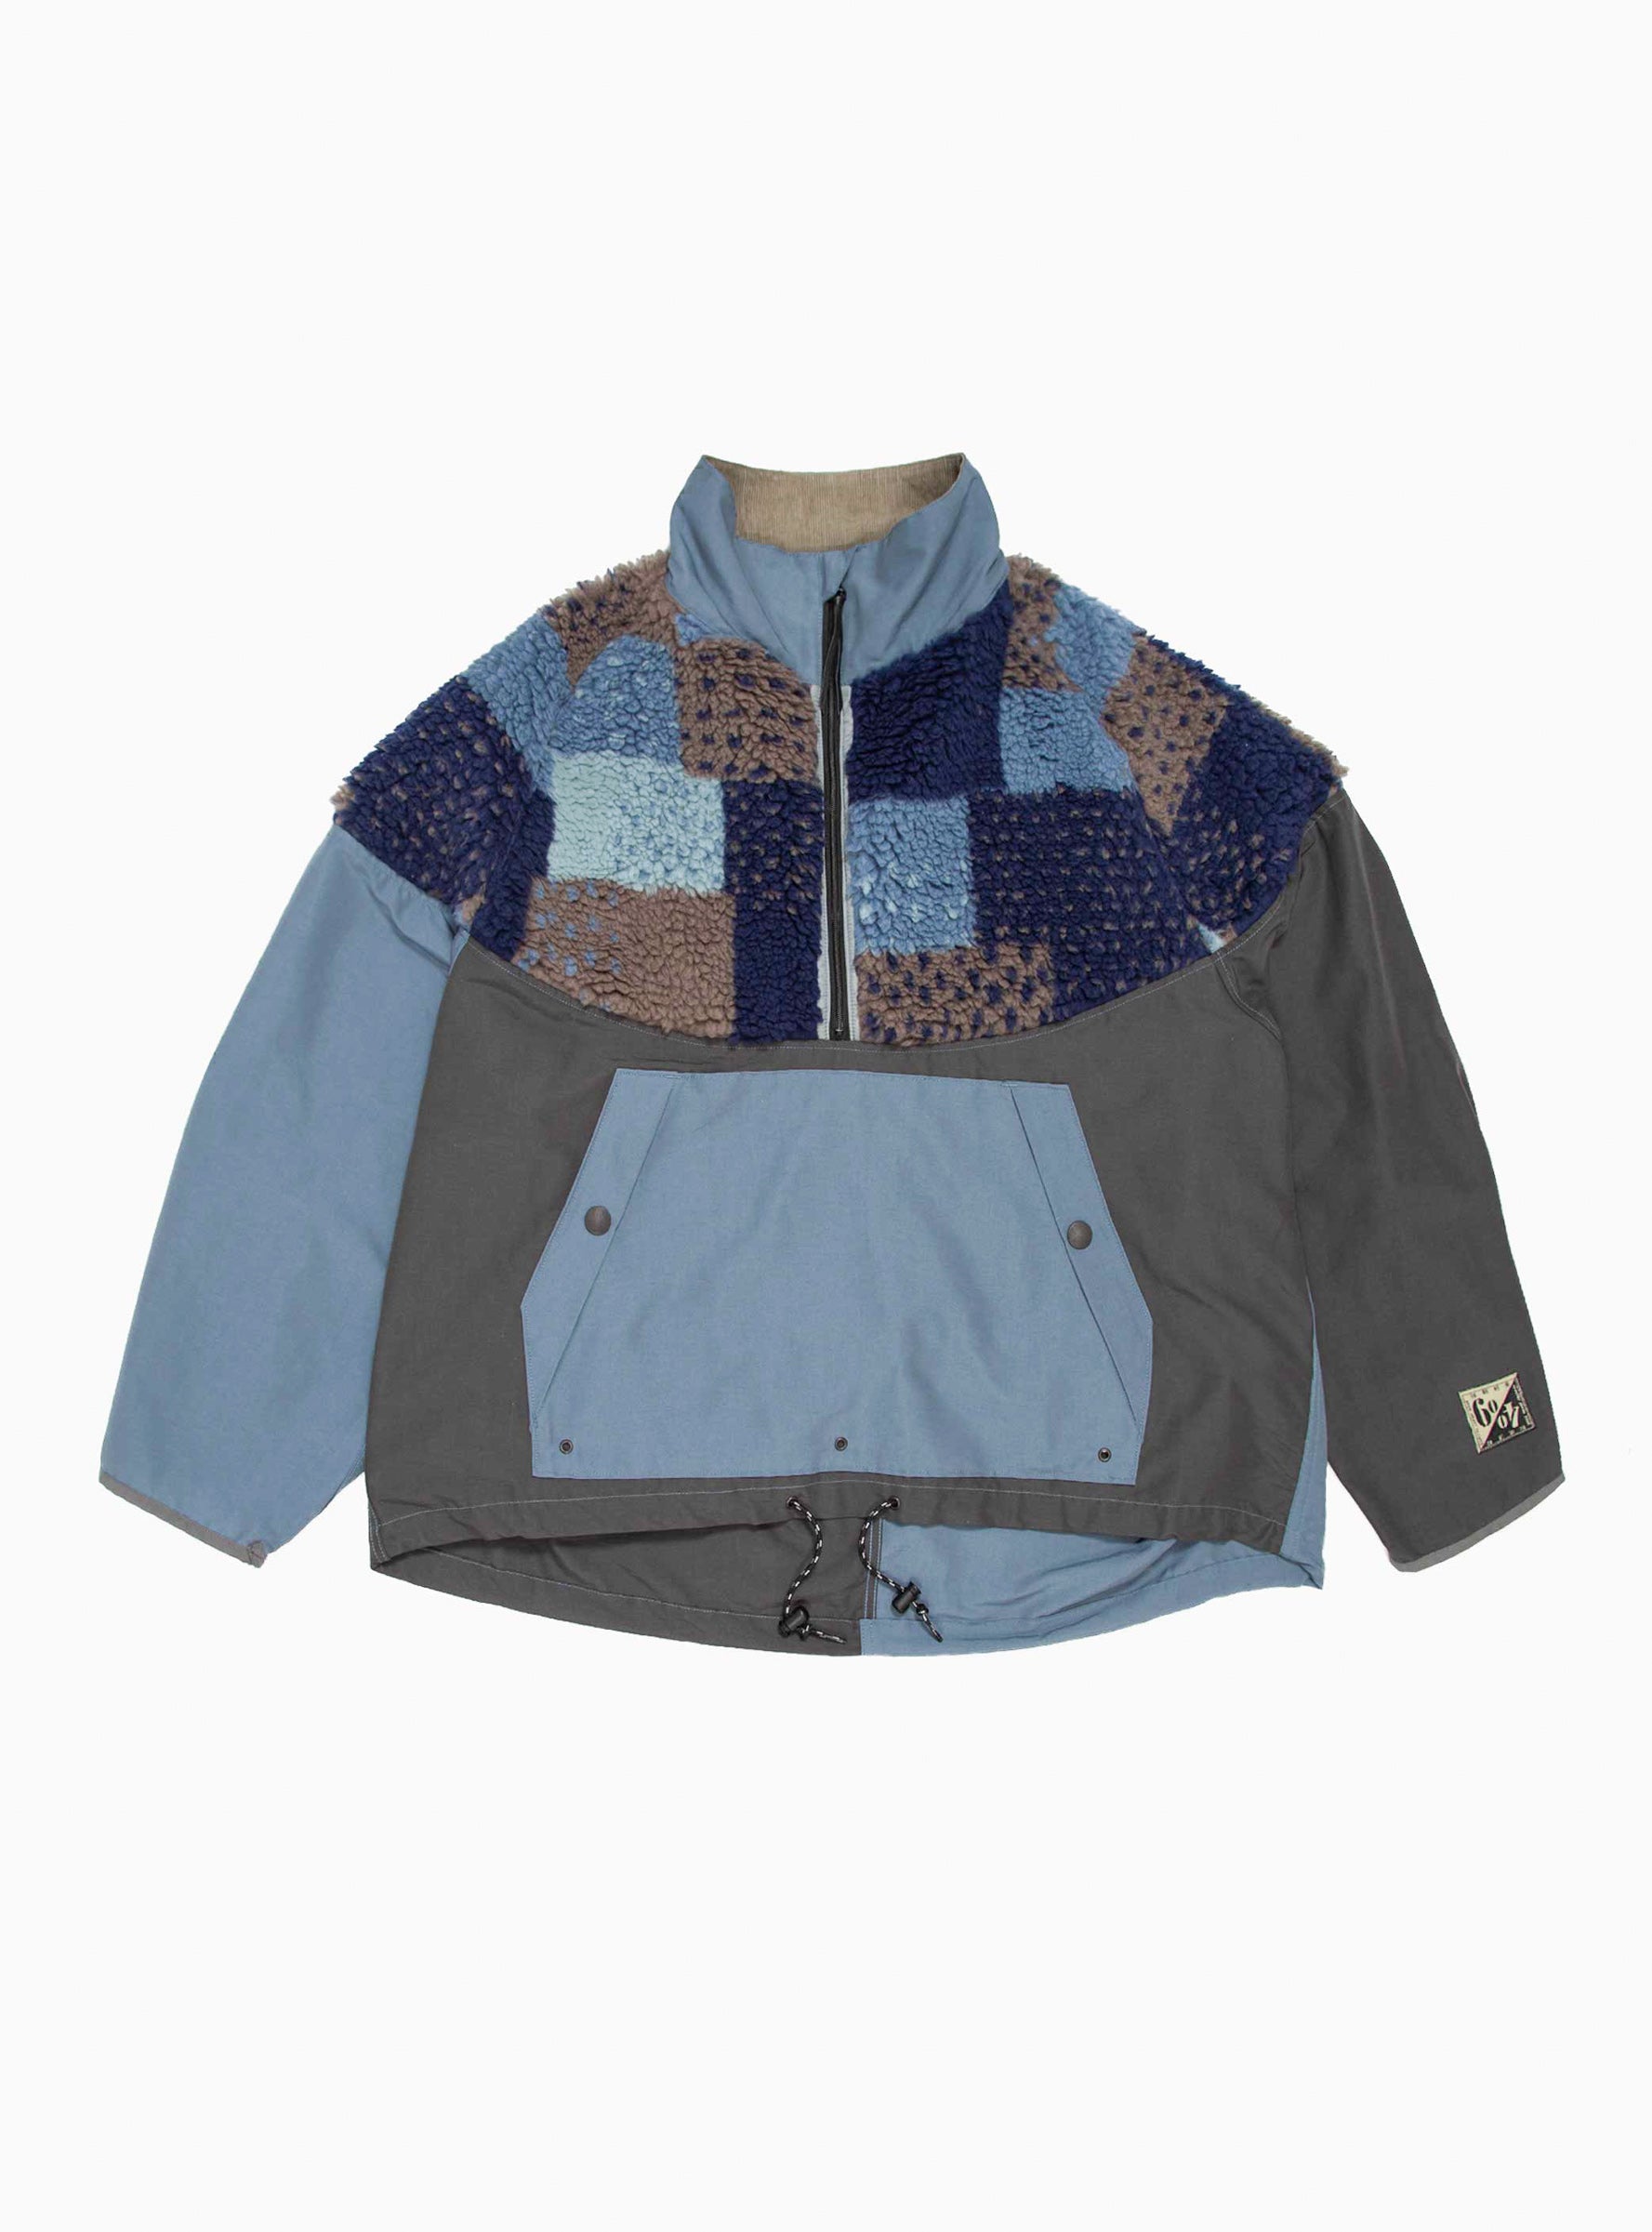 M7409 1981 Vintage 2-Hour Casual Wear Fleece Jackets